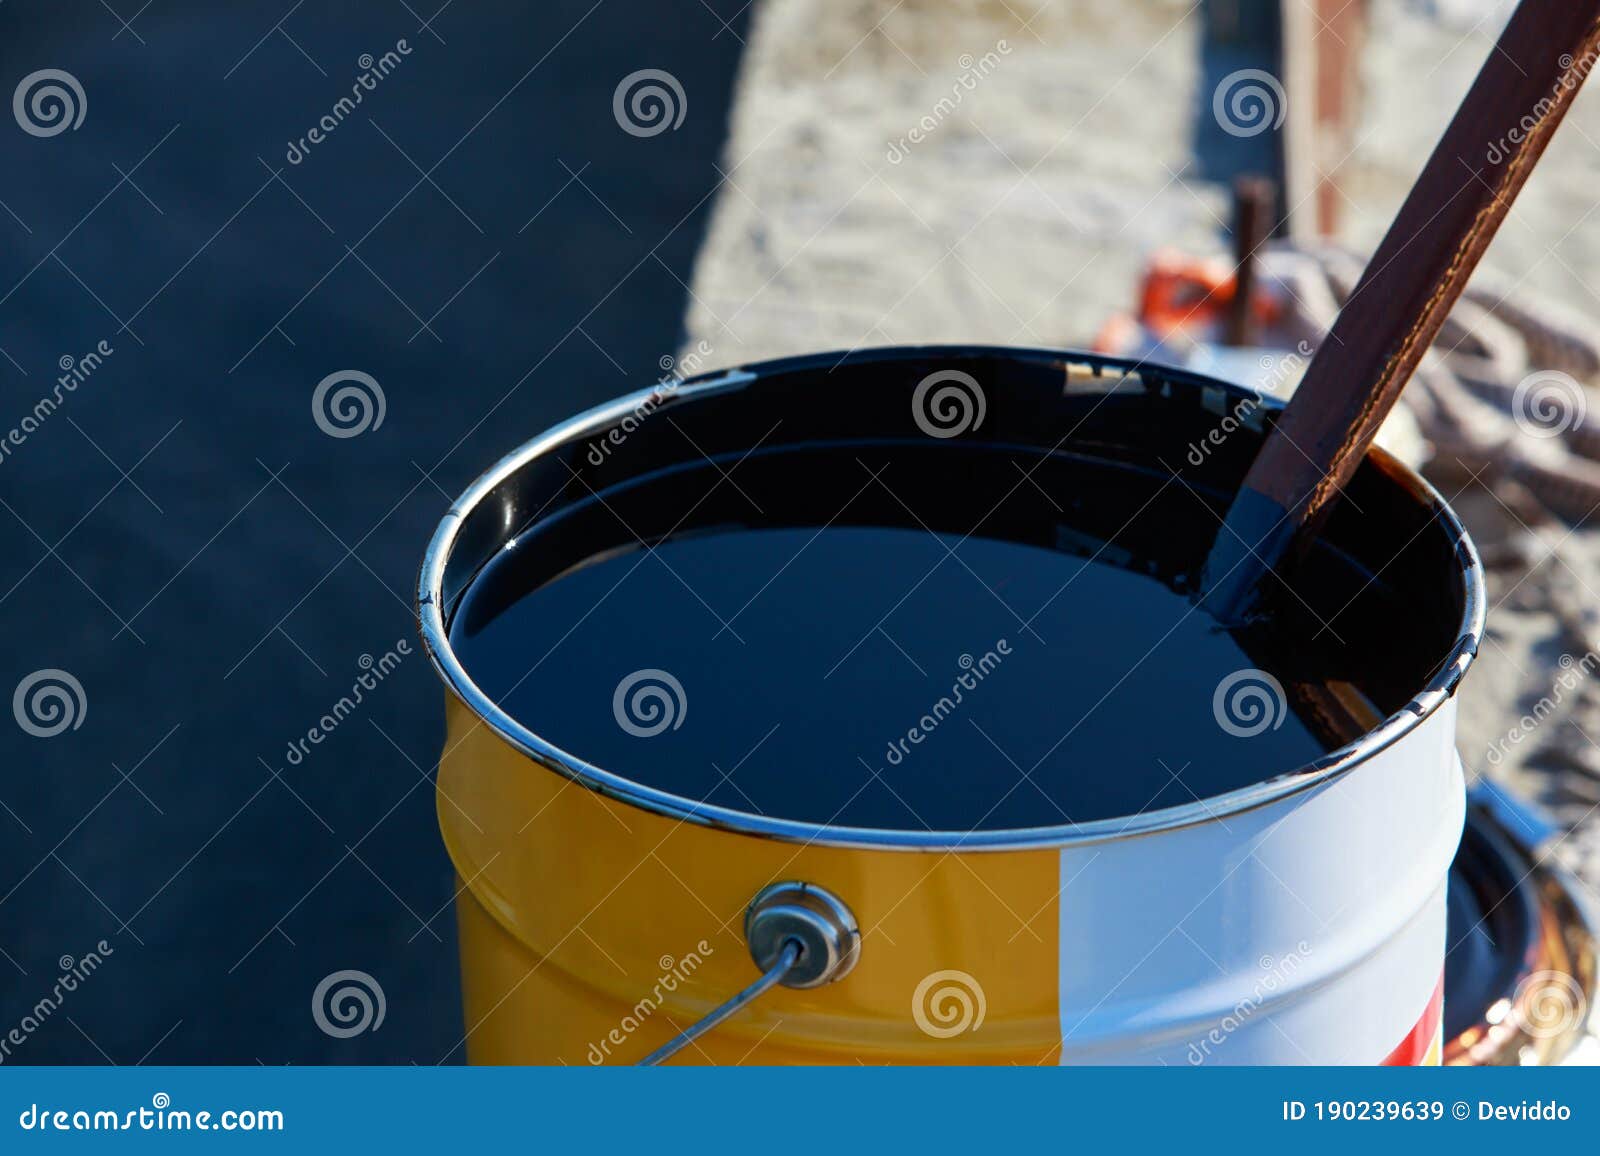 bitumen in a metal barrel